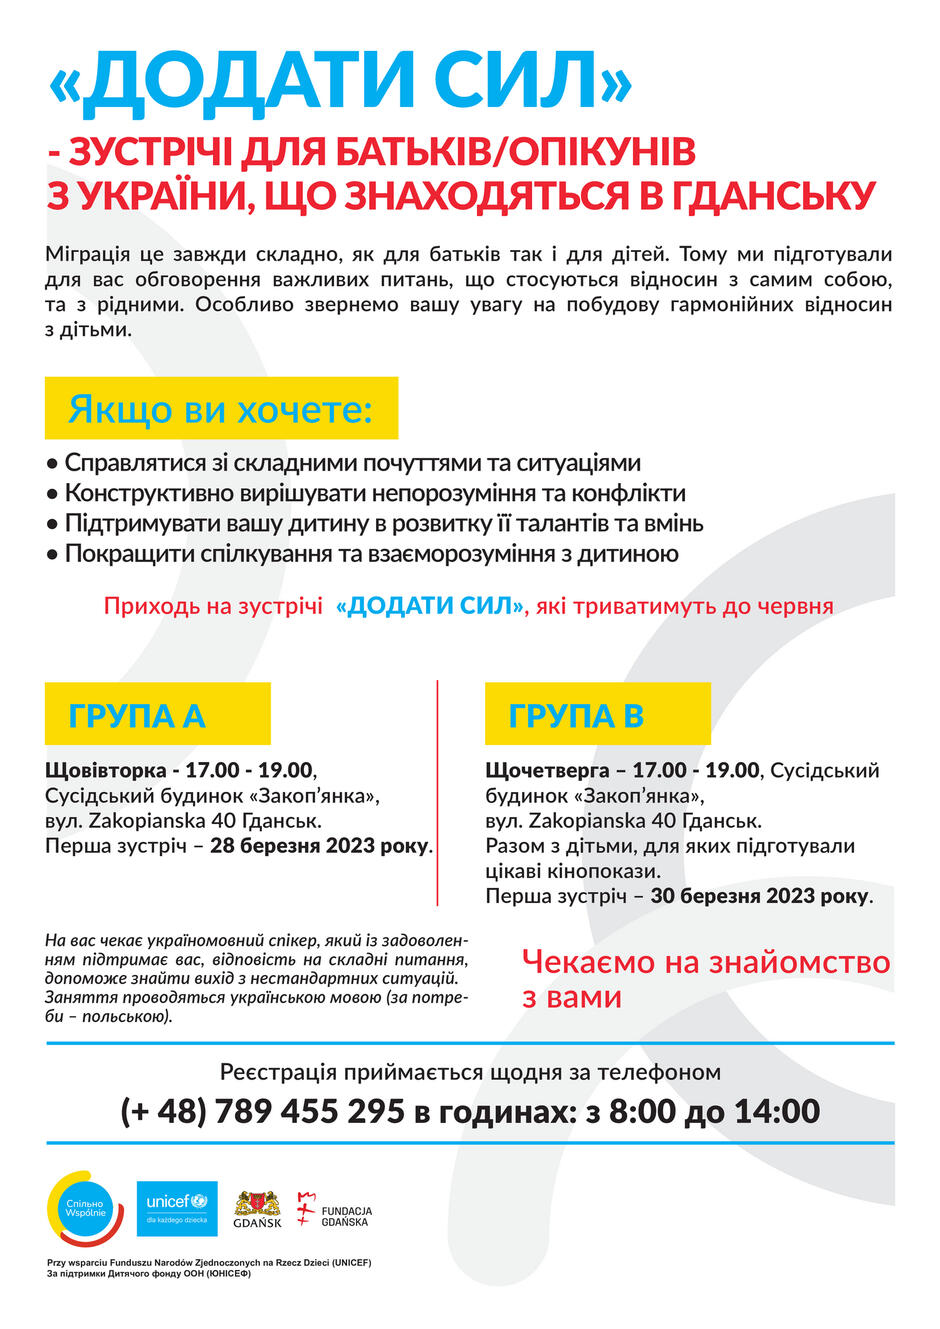 Plakat informacyjny spotkań "Dodać sił" - wersja po ukraińsku